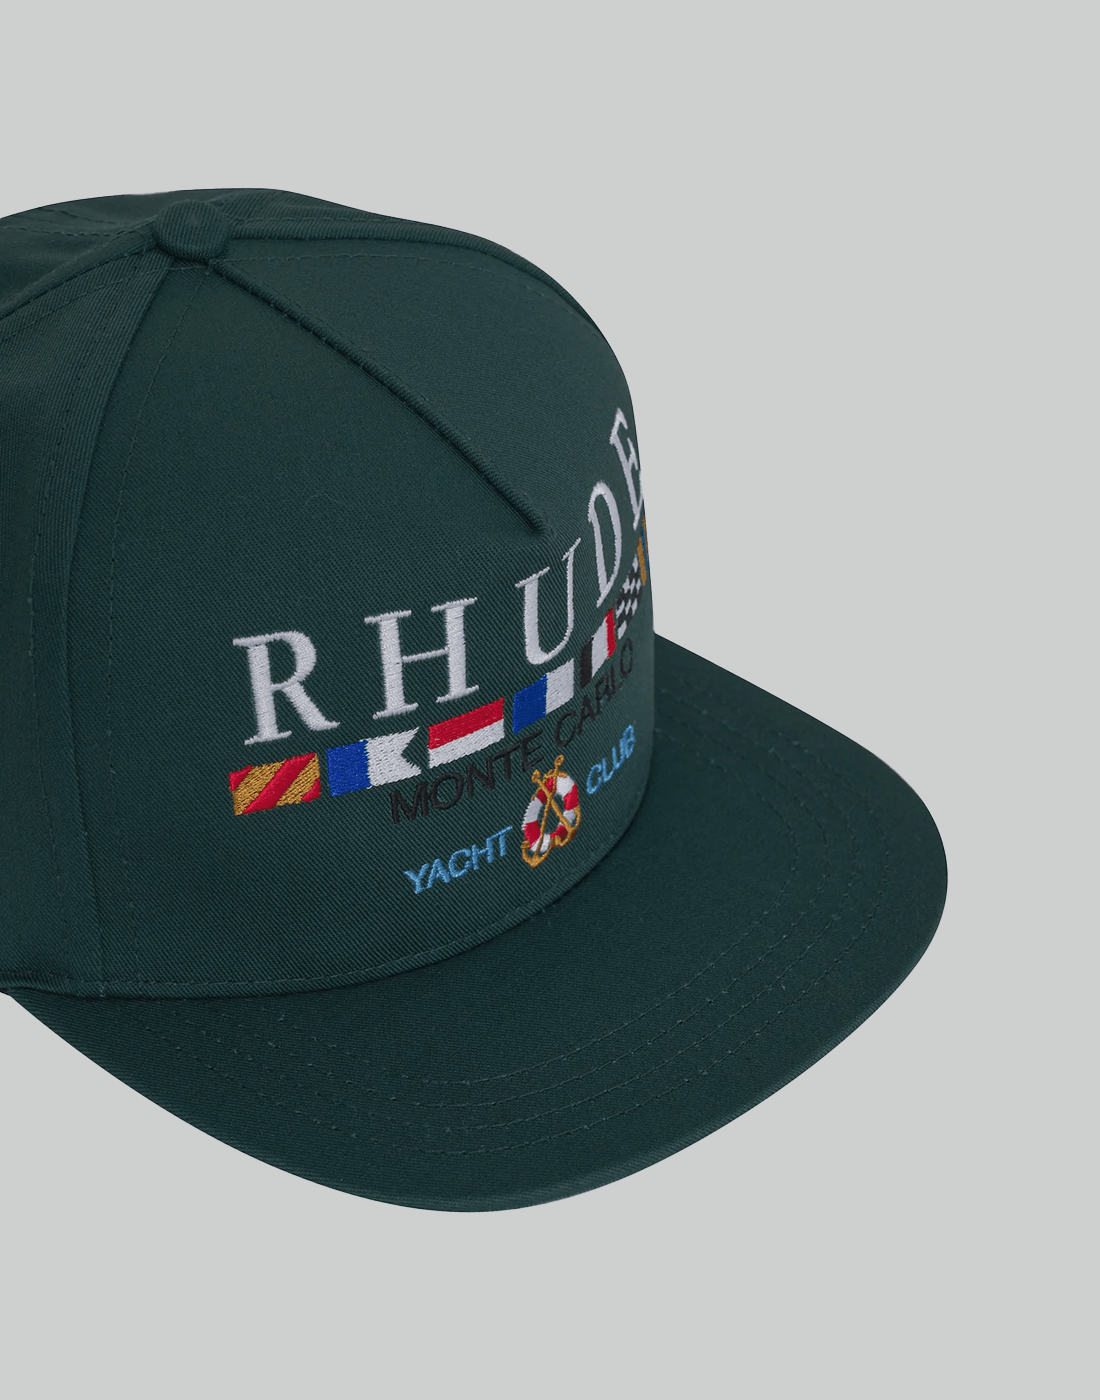 Rhude YACHT CLUB HAT - 082plus